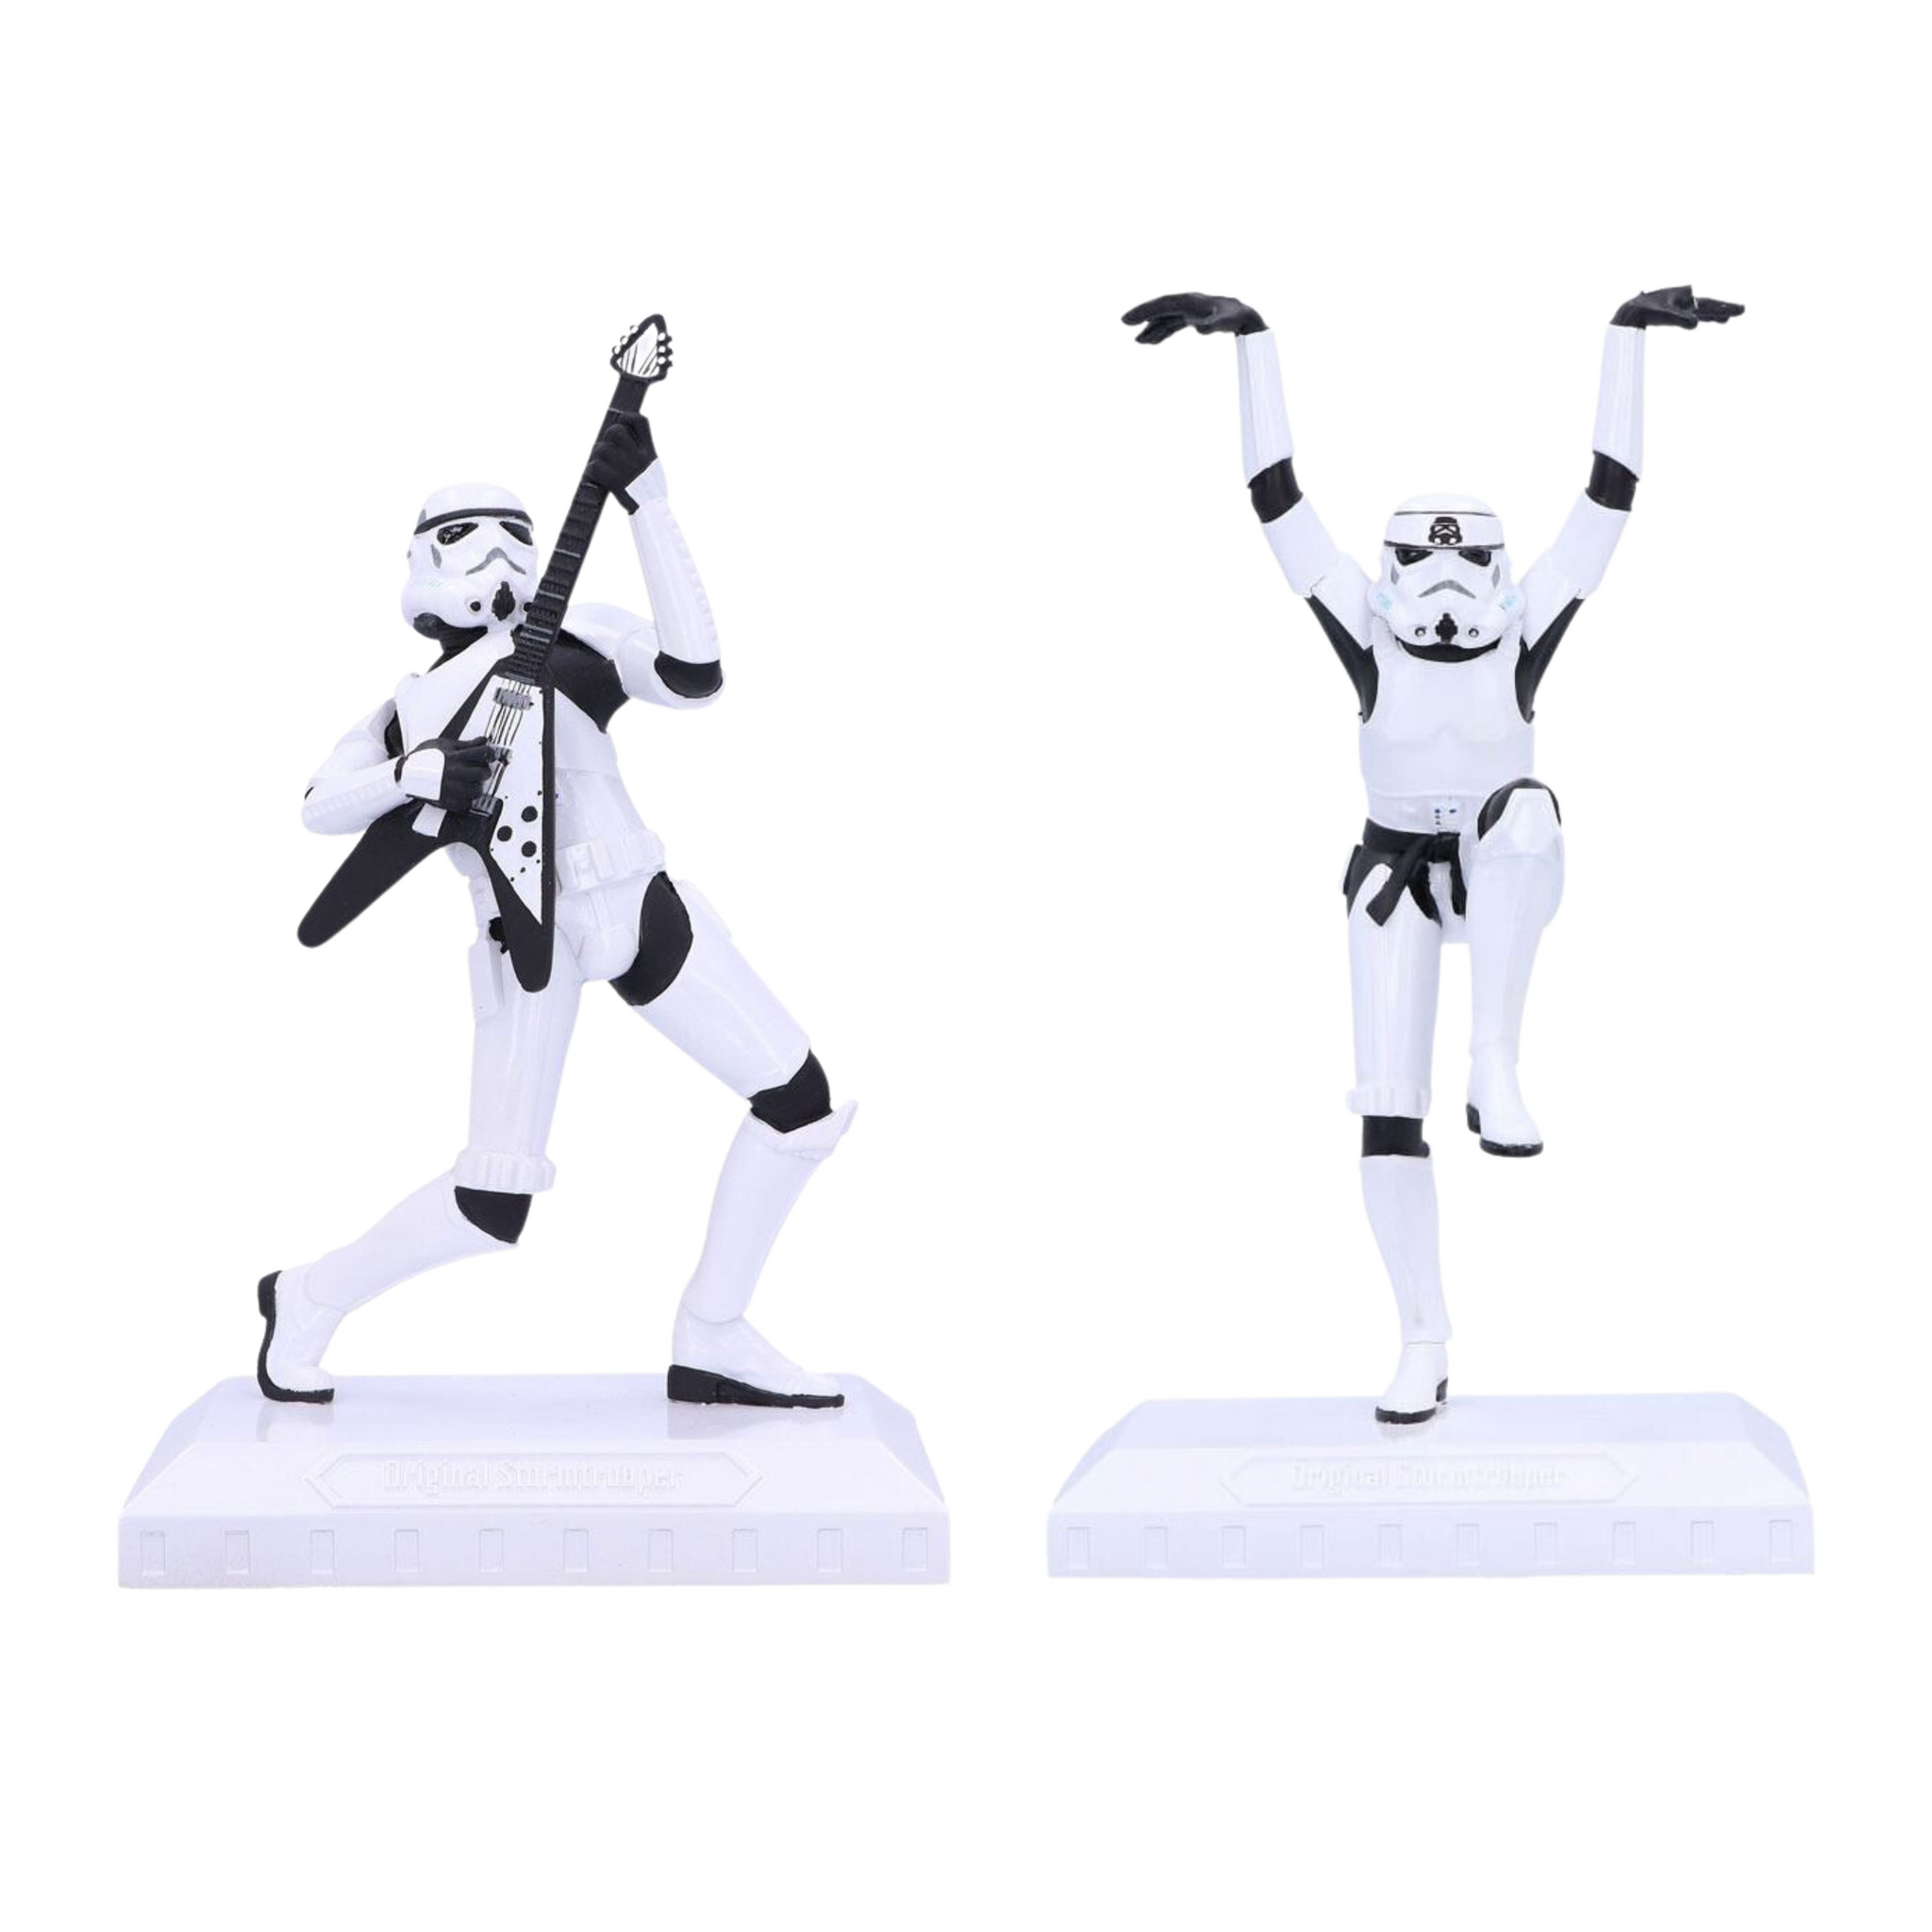 Original Stormtrooper Figures